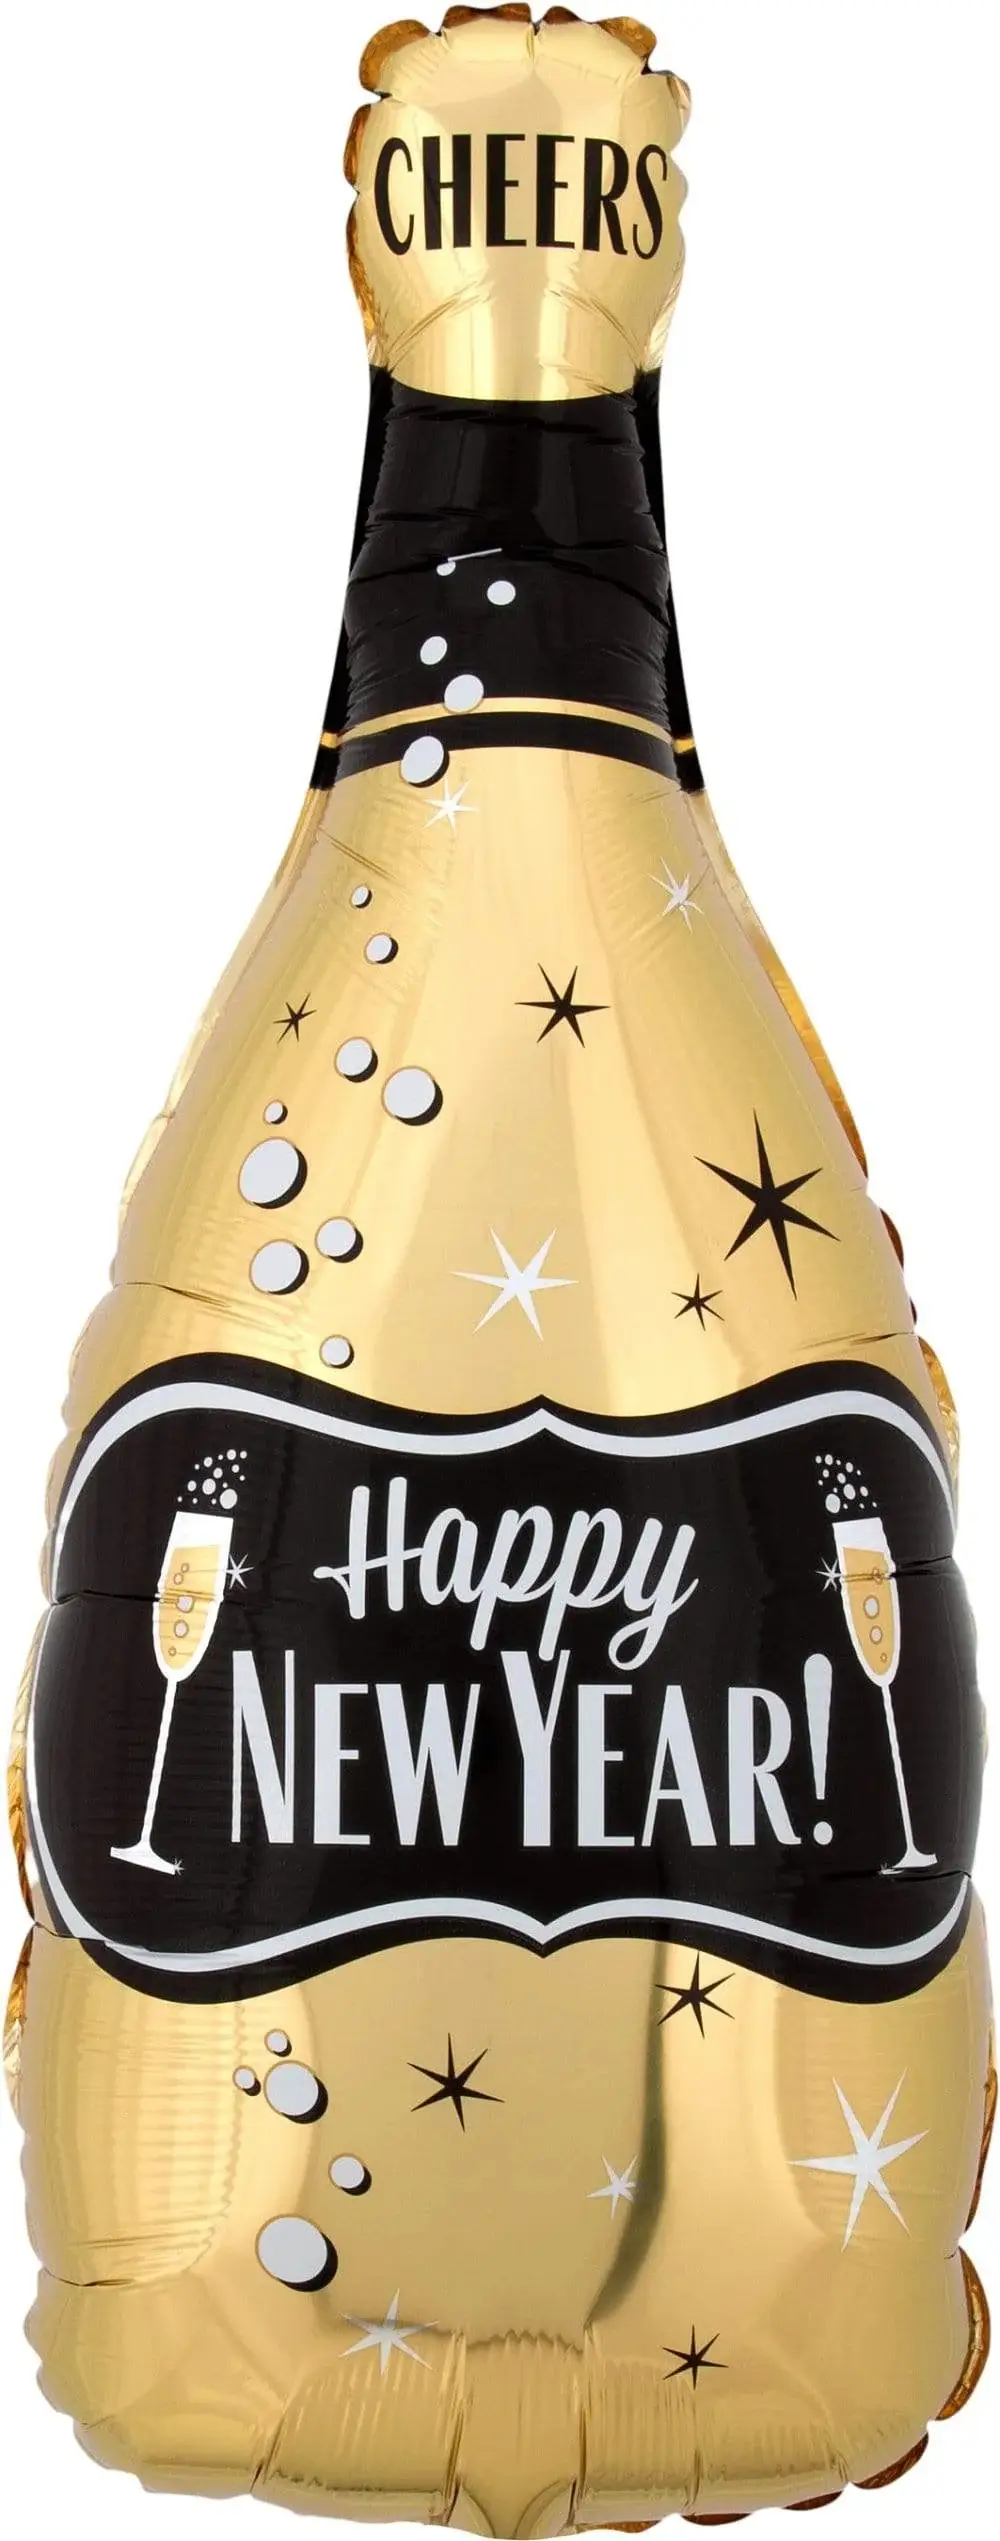 Happy New Year bottle shape